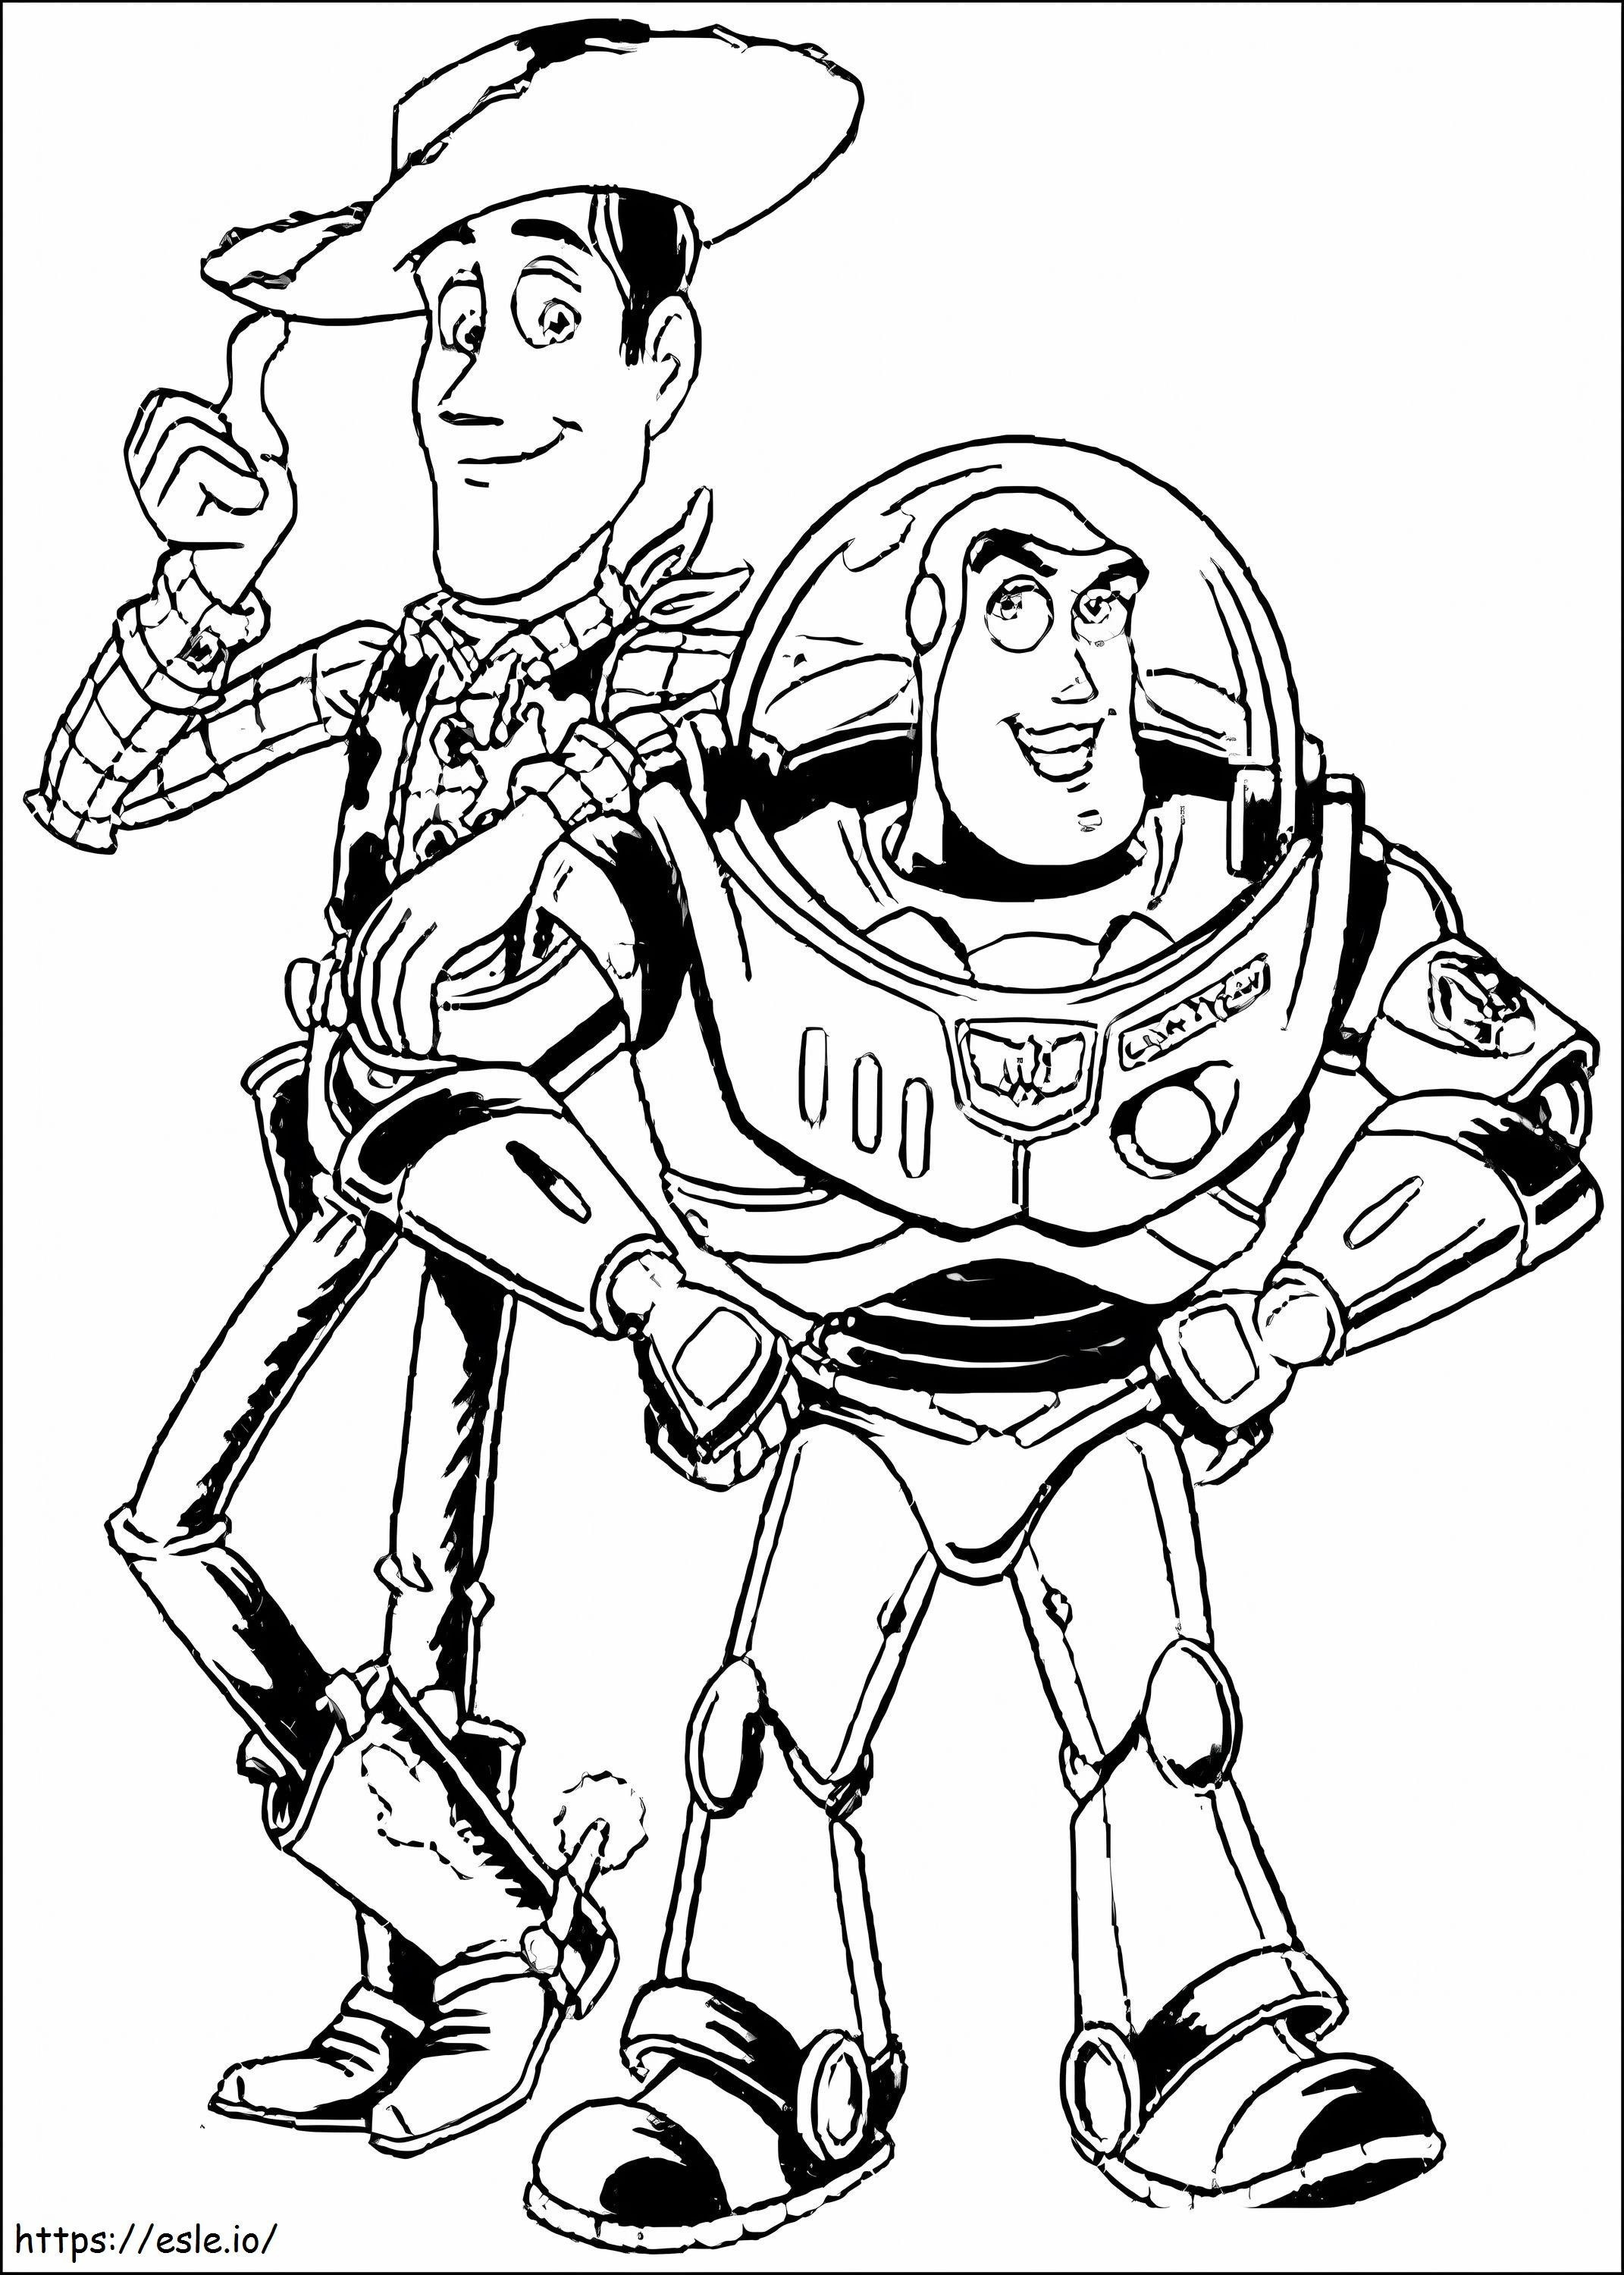 Desenhando Buzz Lightyear e Woody para colorir